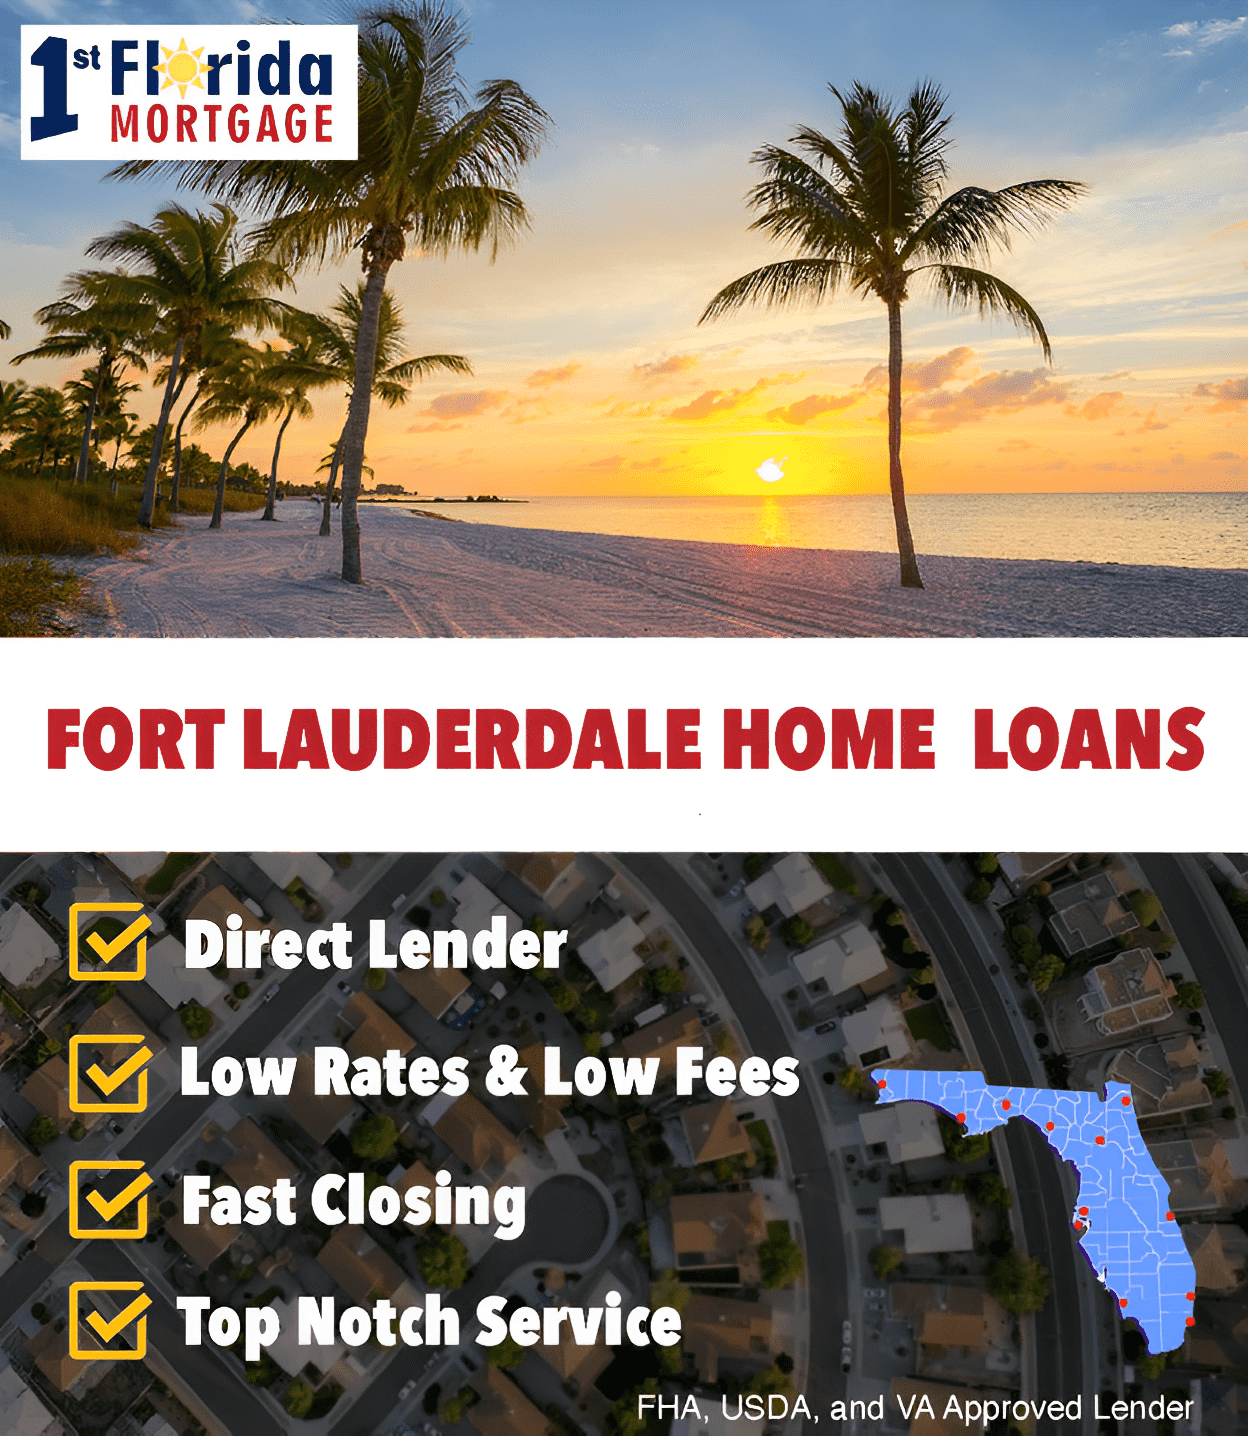 Fort Lauderdale Mortgage Lender